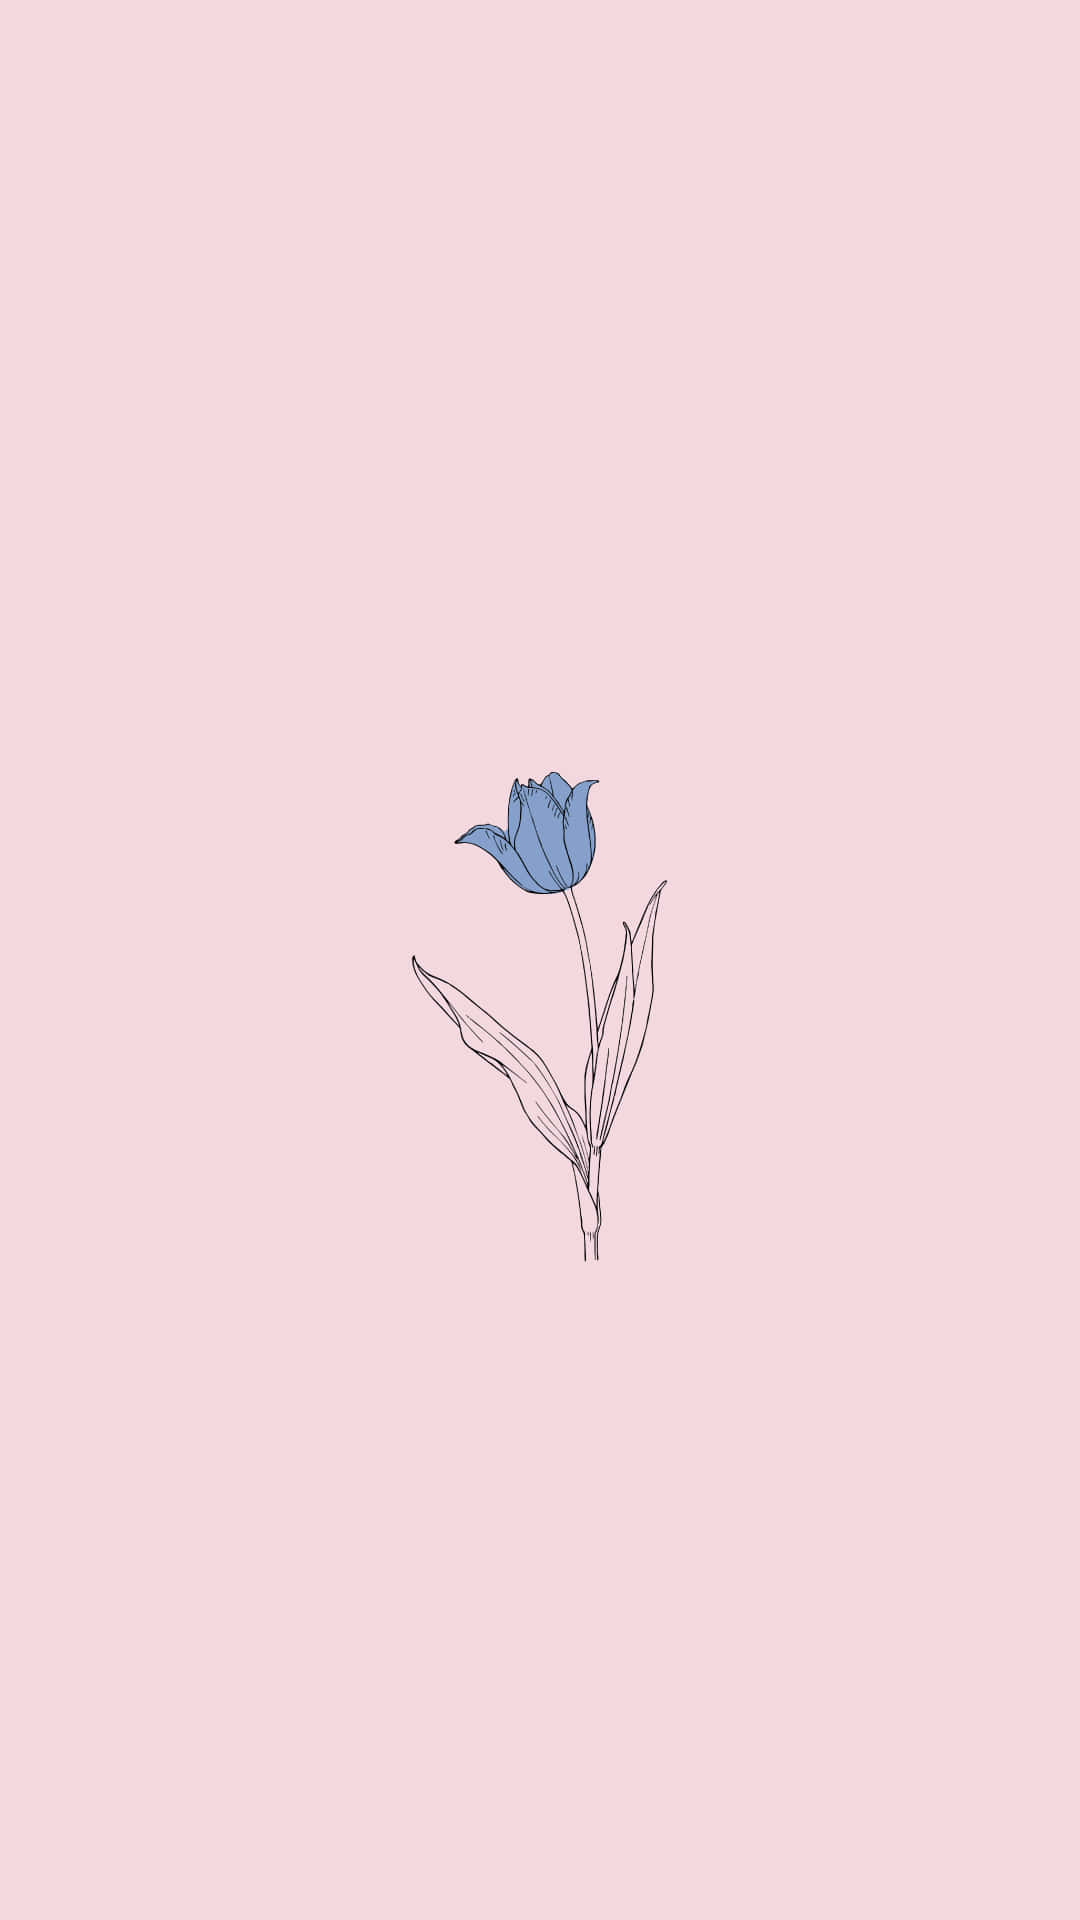 Enblå Blomma På En Rosa Bakgrund Wallpaper